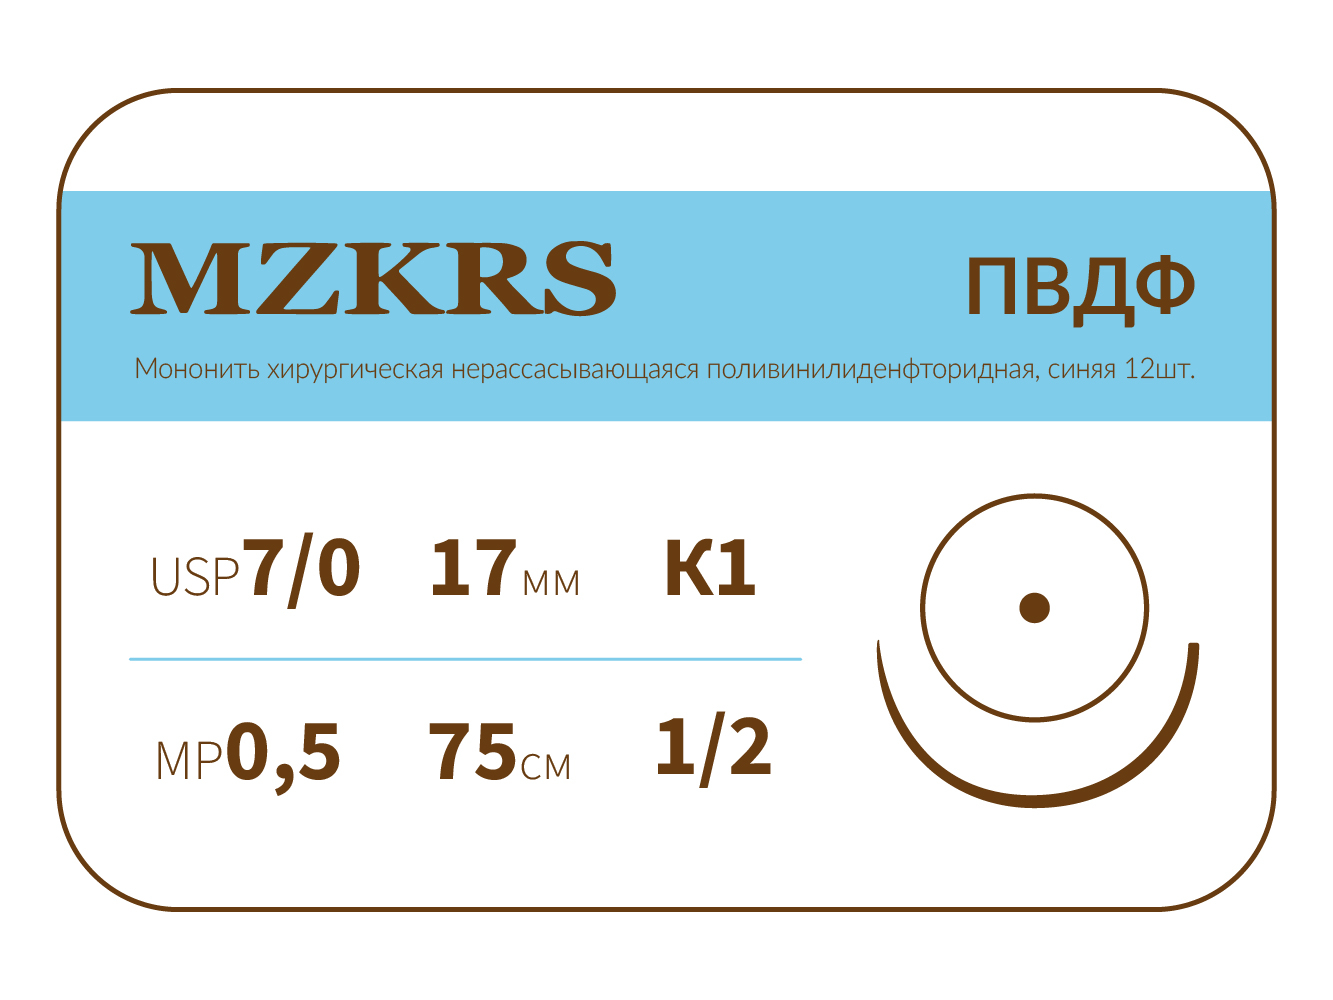 1712К1-Premium-7/0 (0.5)45 ПВДФ хирургическая нить поливинилиденфторидная, MZKRS (Россия)